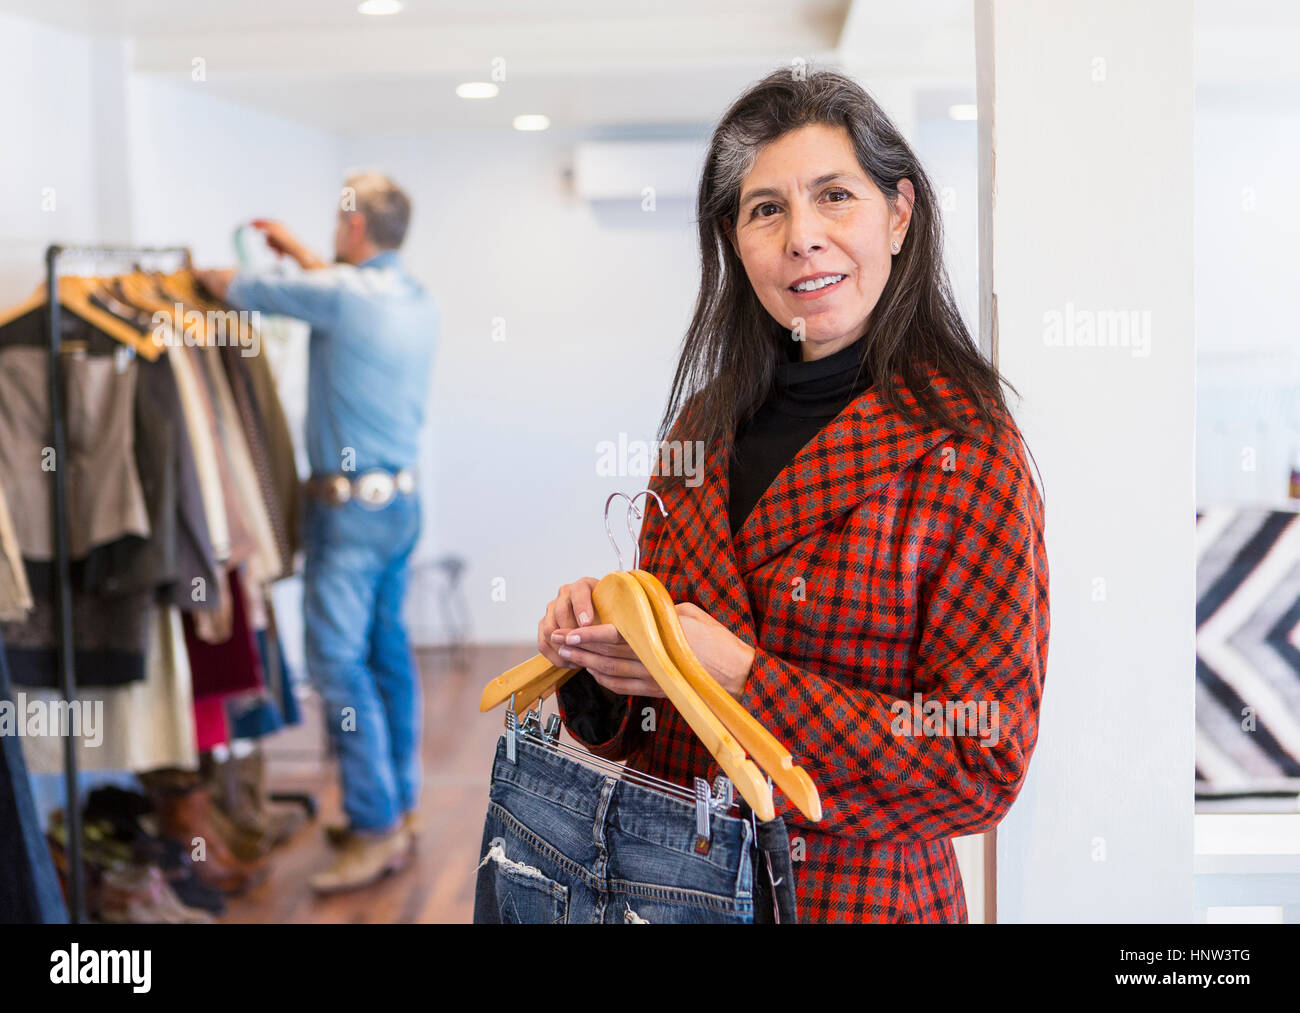 Frau shopping für Jeans in Bekleidungsgeschäft Stockfoto